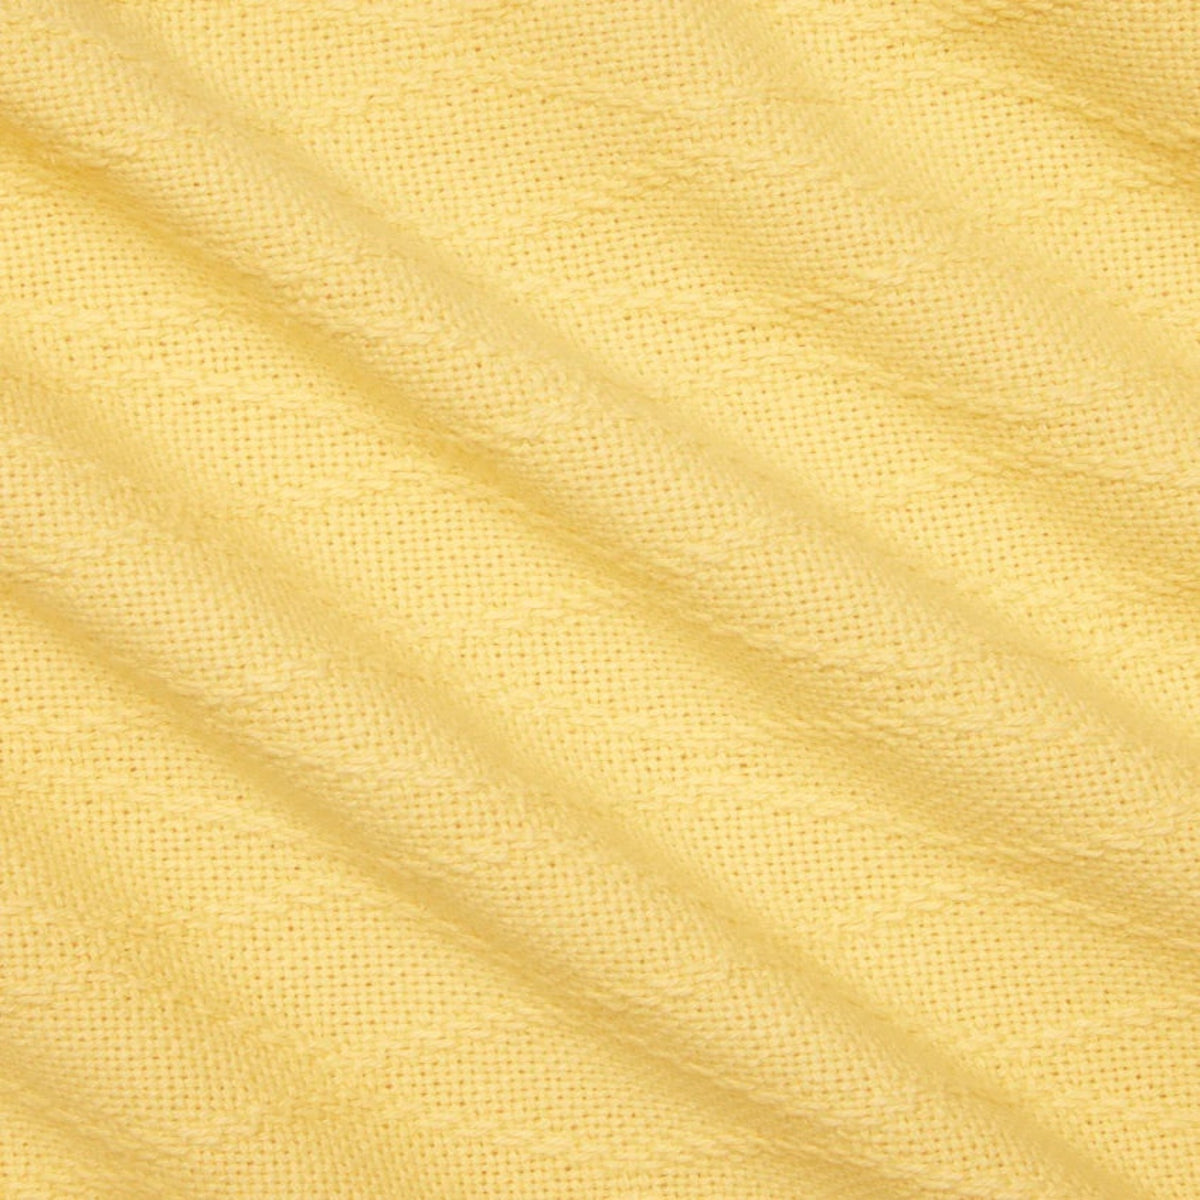 Swatch Sample of Sferra Cetara Bedding Banana Color